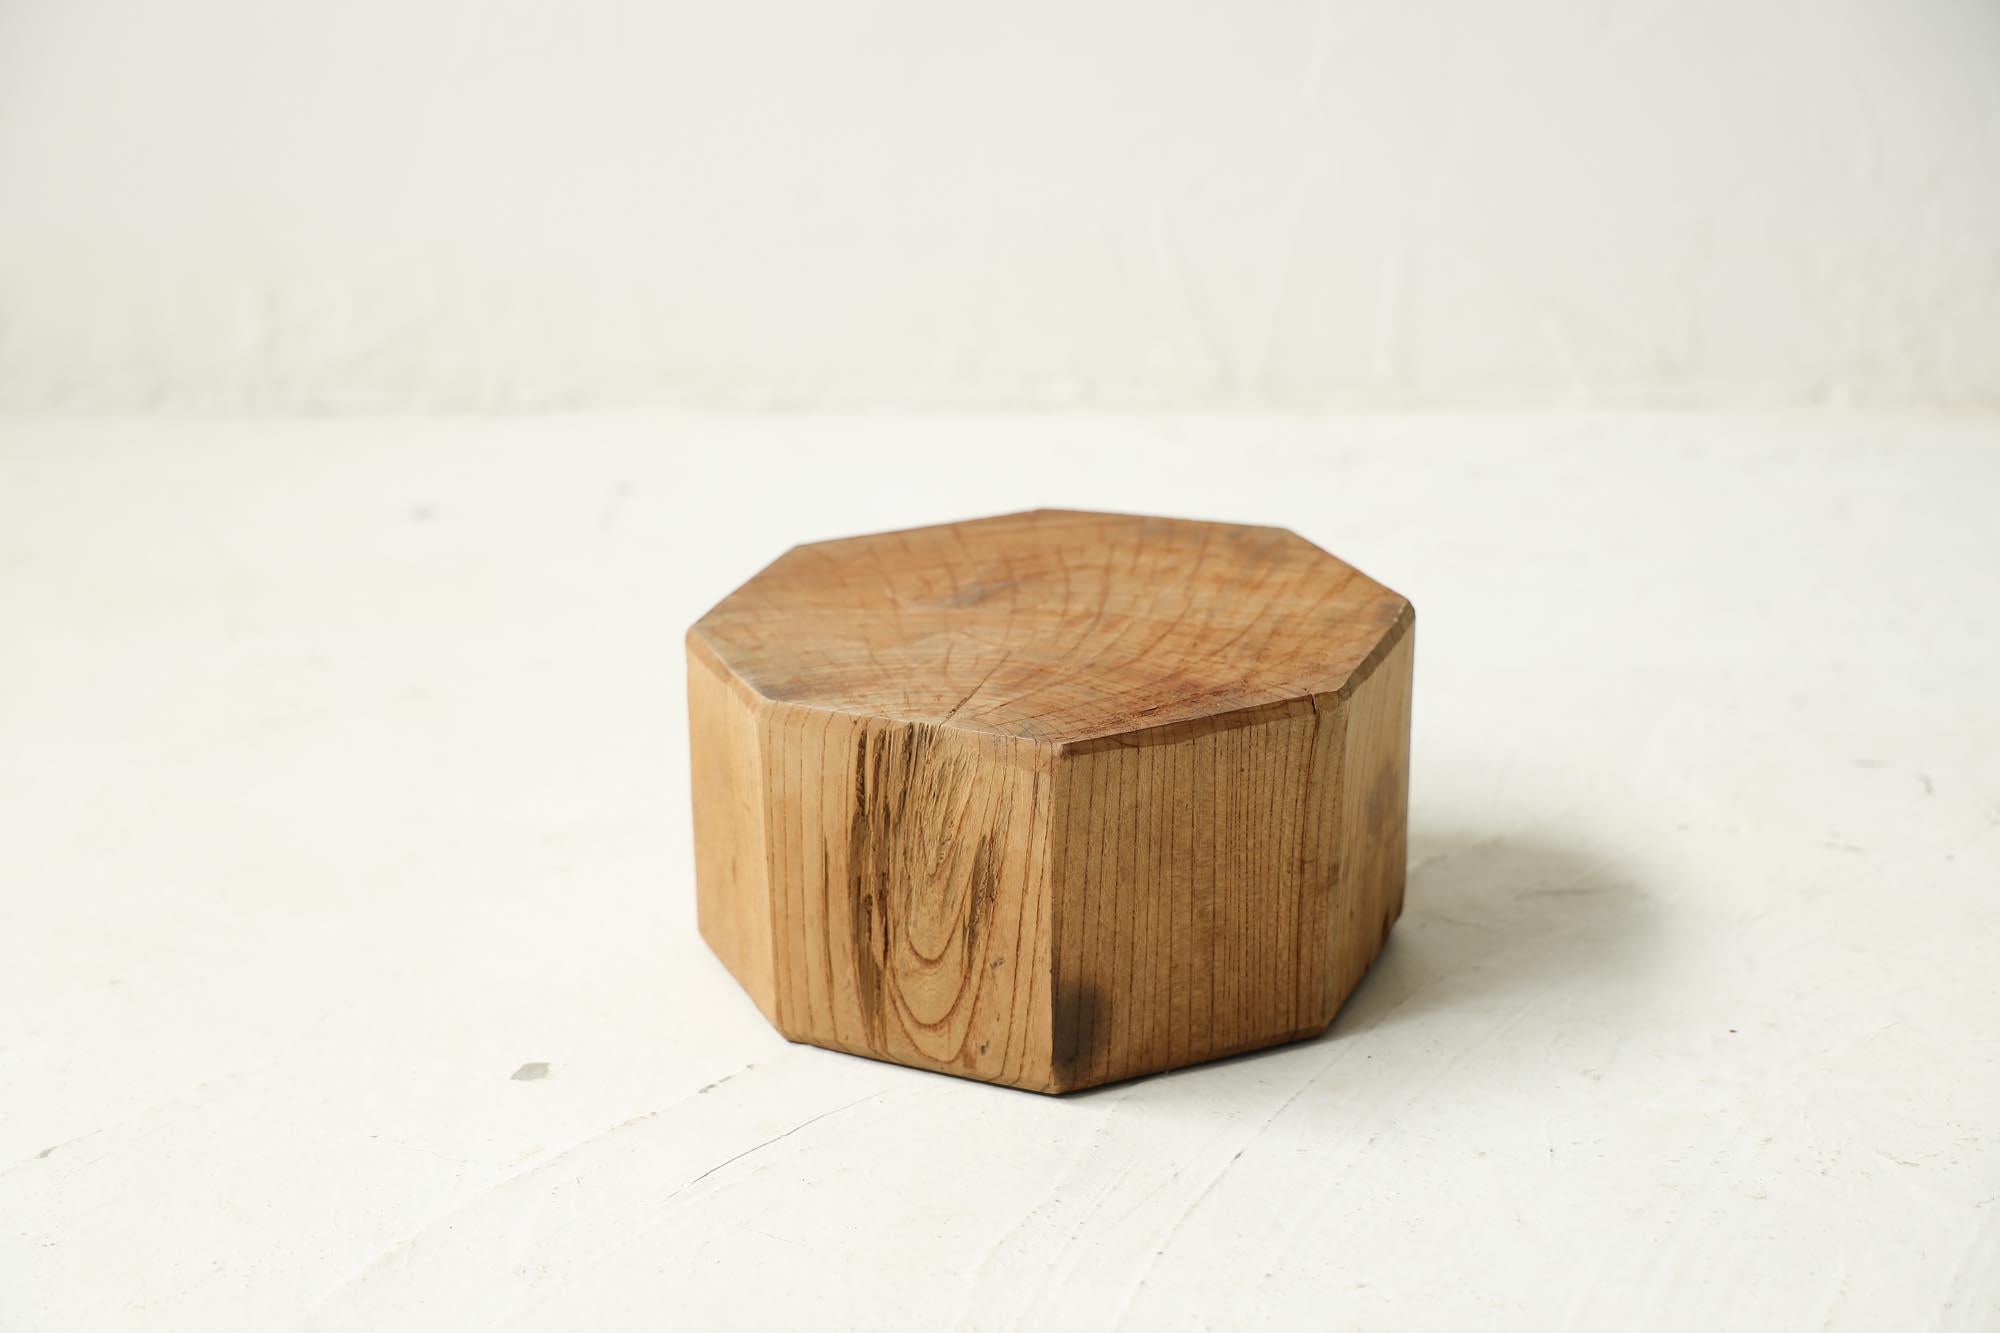 Dies ist ein japanischer Verkaufsständer.
Das MATERIAL ist Zelkova, ein Holz, das nur in Japan vorkommt.
Es ist ein sehr seltener Gegenstand.

Er wird von einem Handwerker mit einem Hobel fertiggestellt.

Die Maserung des Holzes ist elegant